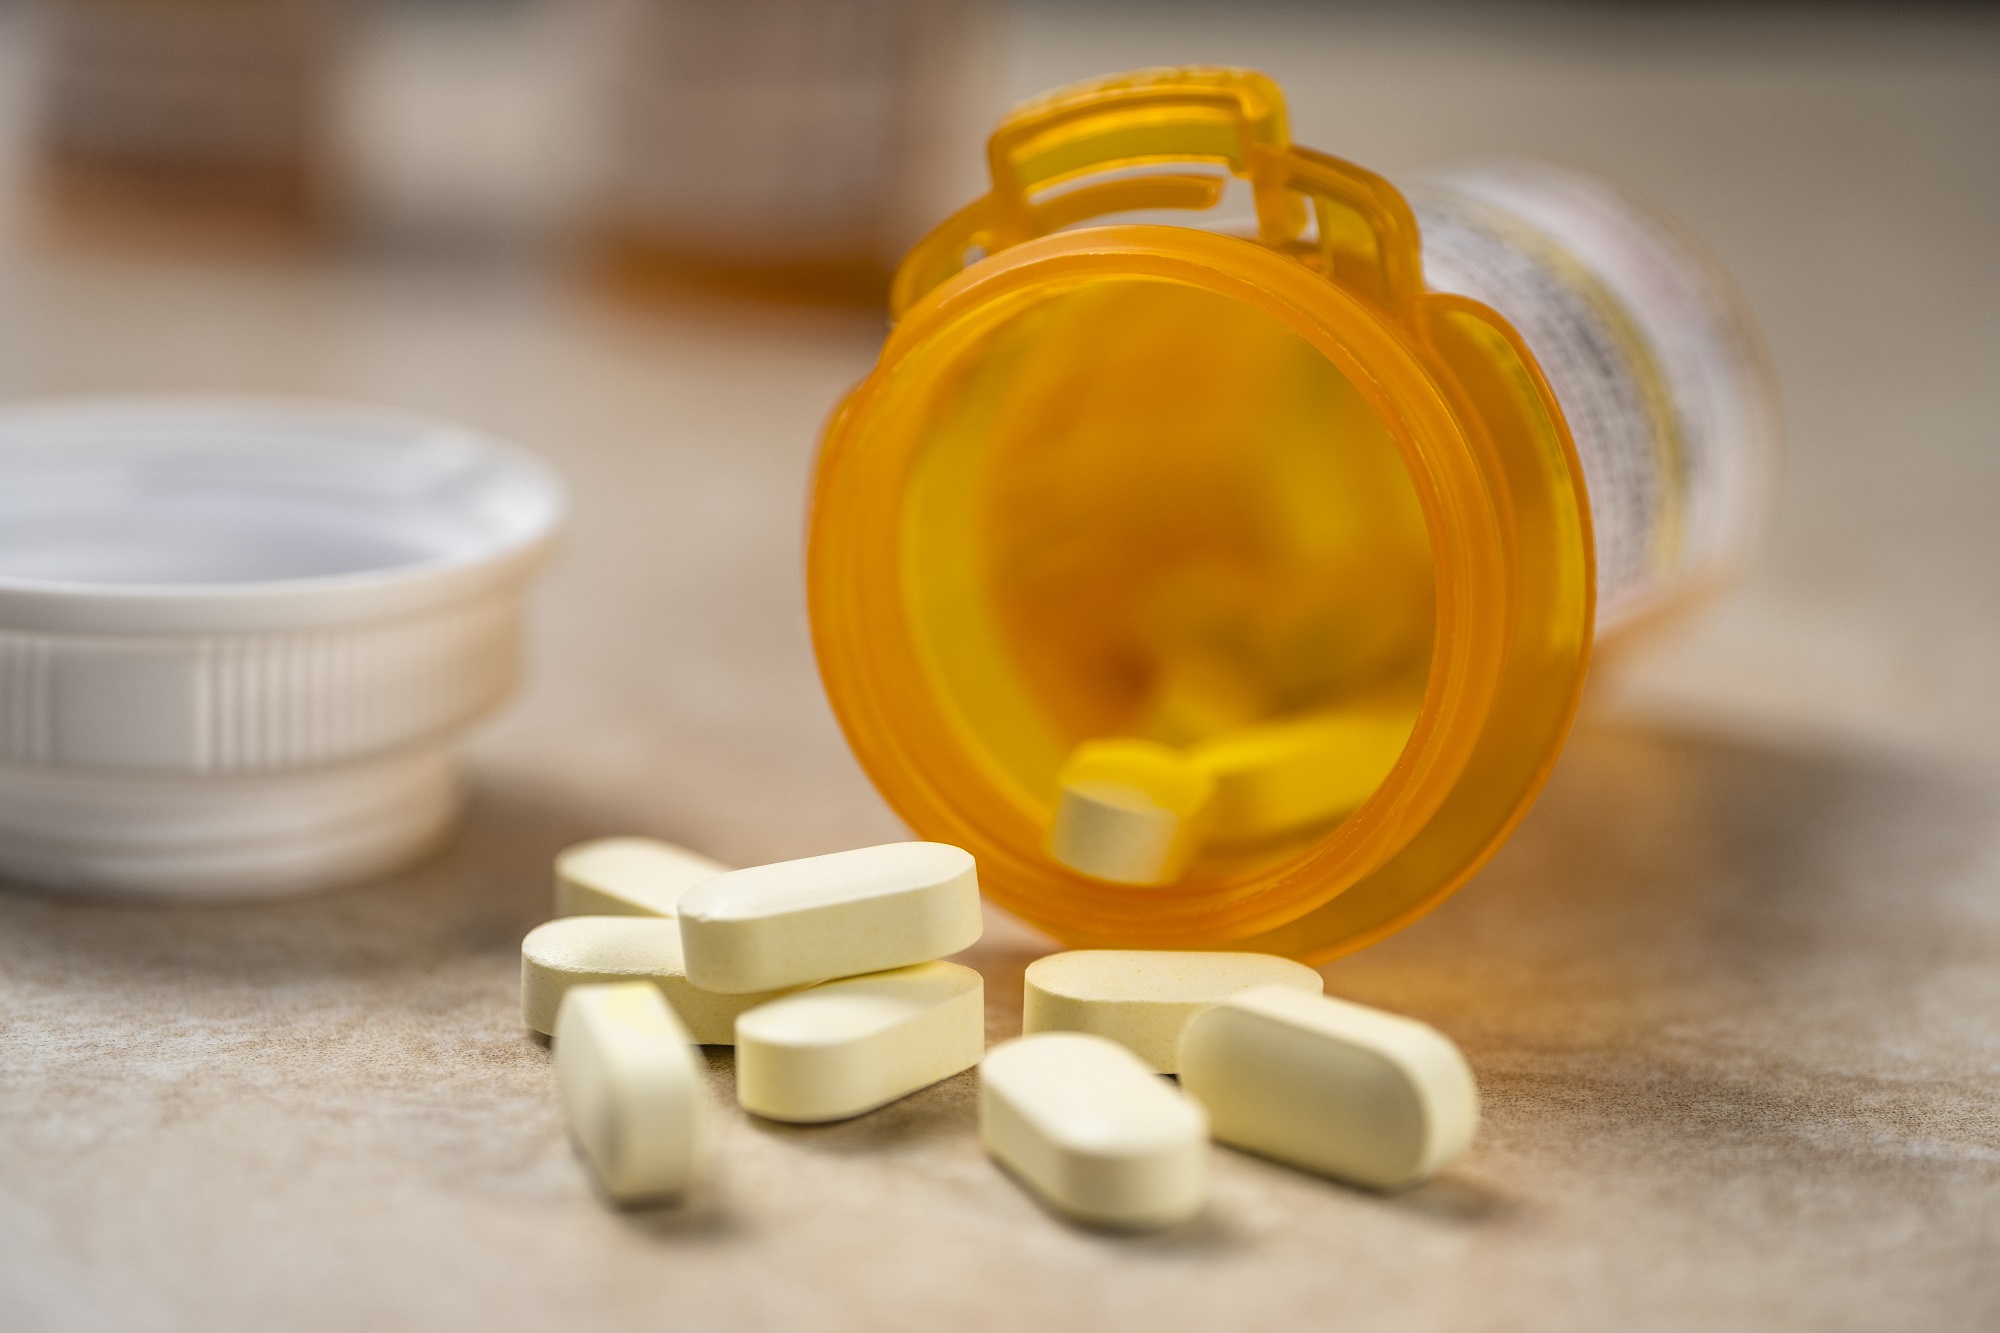 . aprueba que antídoto para sobredosis de opioides se venda sin receta